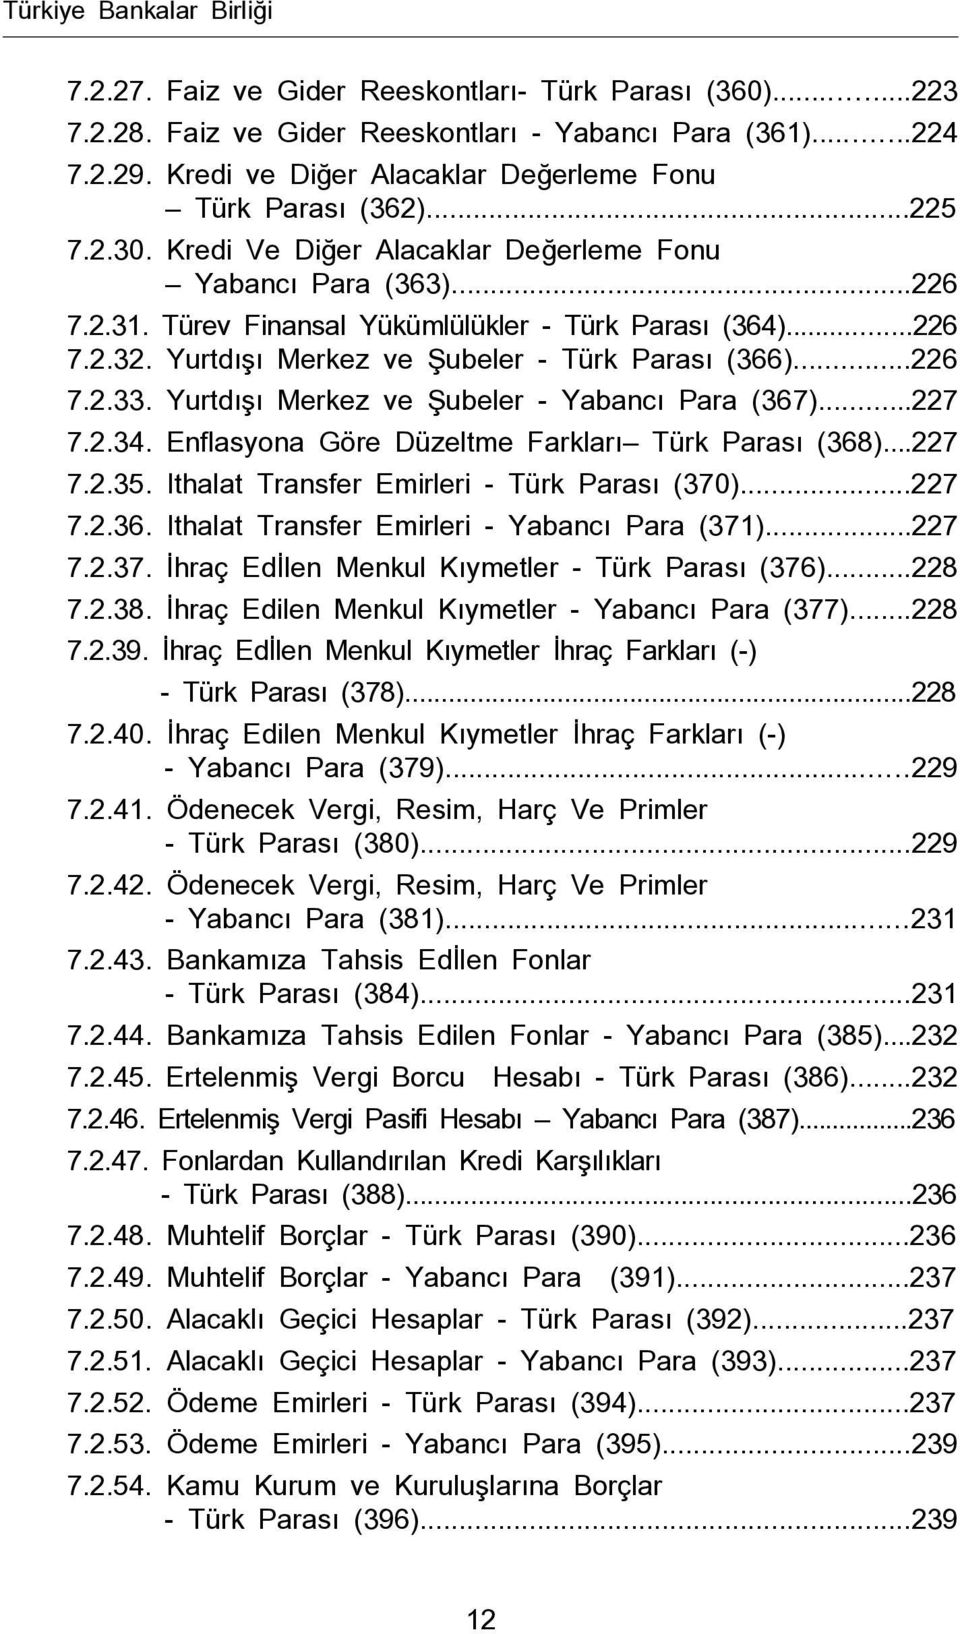 Yurtdışı Merkez ve Şubeler - Türk Parası (366)...226 7.2.33. Yurtdışı Merkez ve Şubeler - Yabancı Para (367)...227 7.2.34. Enflasyona Göre Düzeltme Farkları Türk Parası (368)...227 7.2.35.